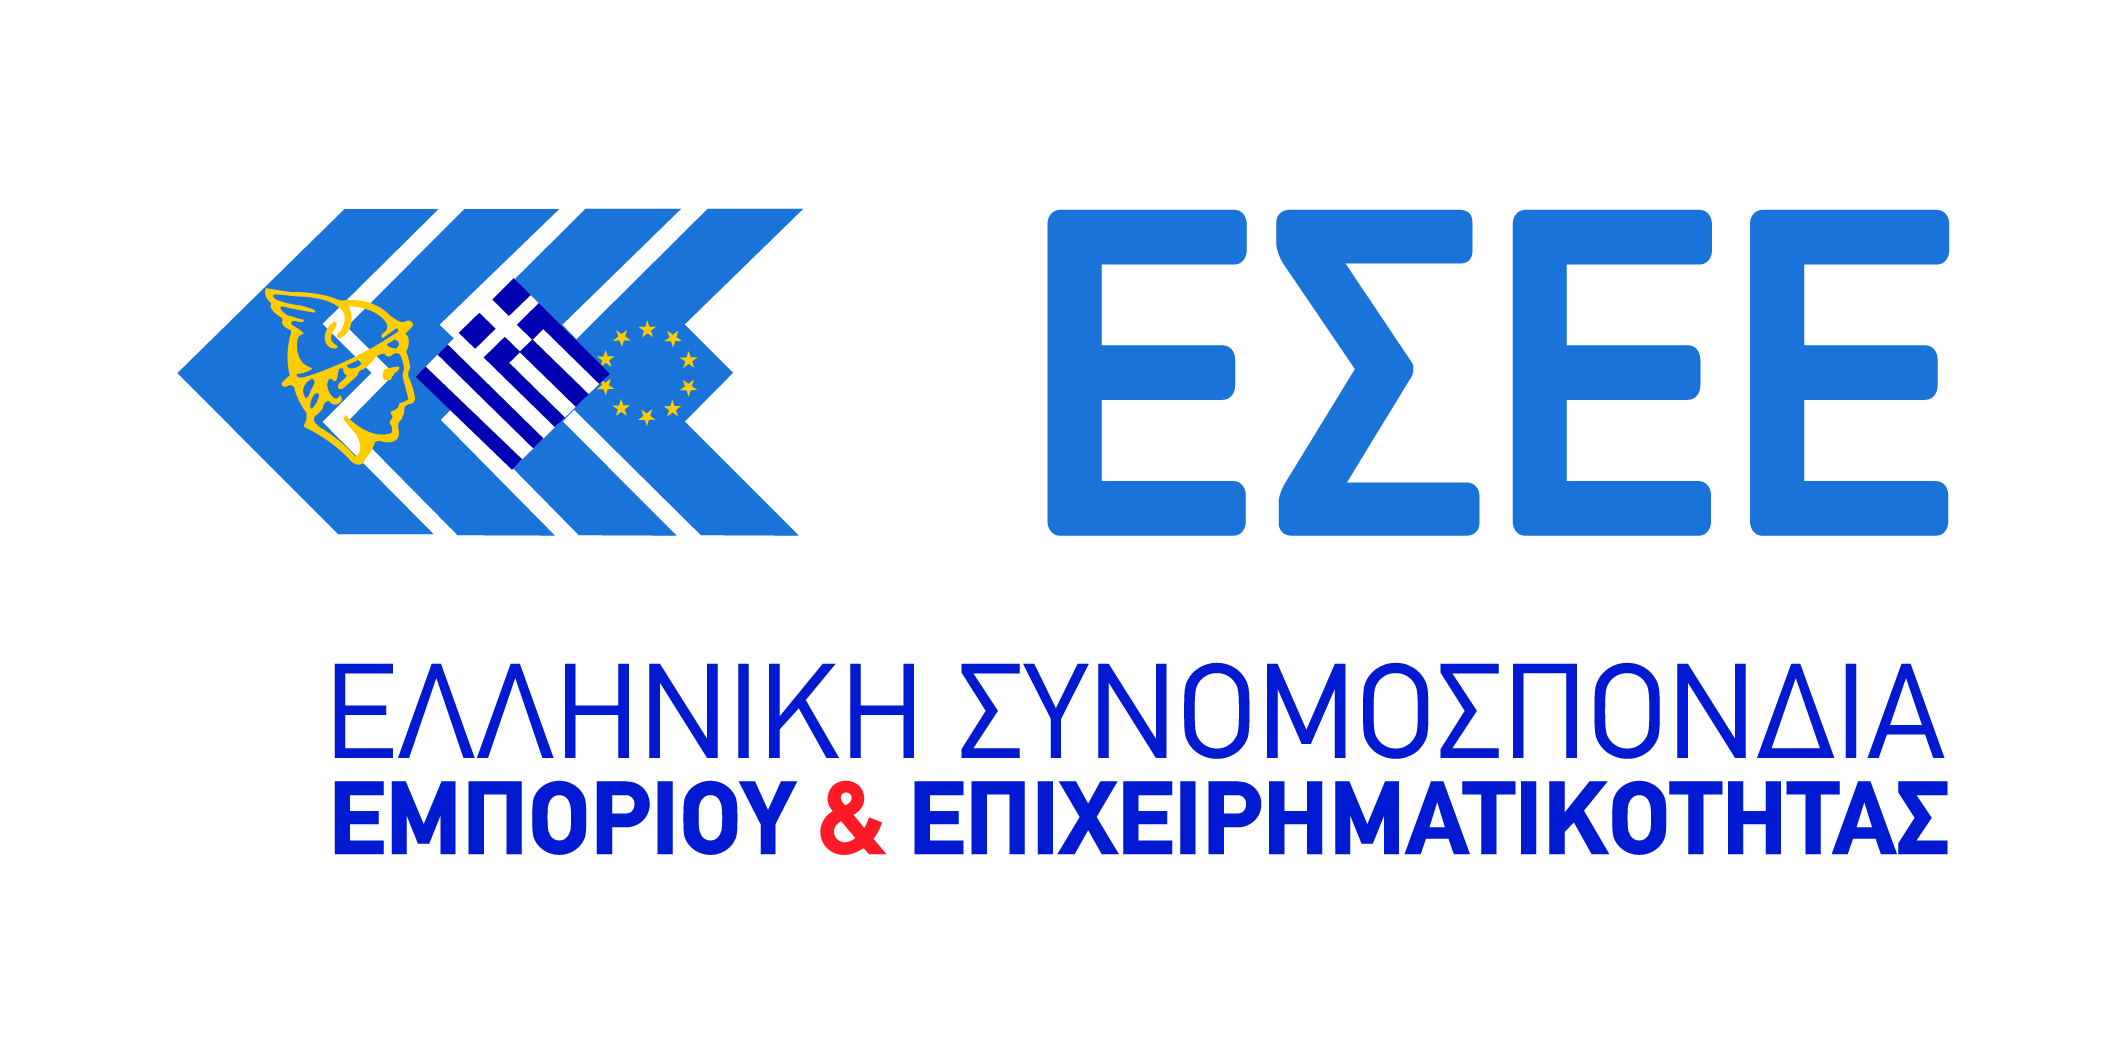 ΘΕΣΕΙΣ – ΕΣΕΕ – Ελληνική Συνομοσπονδία Εμπορίου & Επιχειρηματικότητας